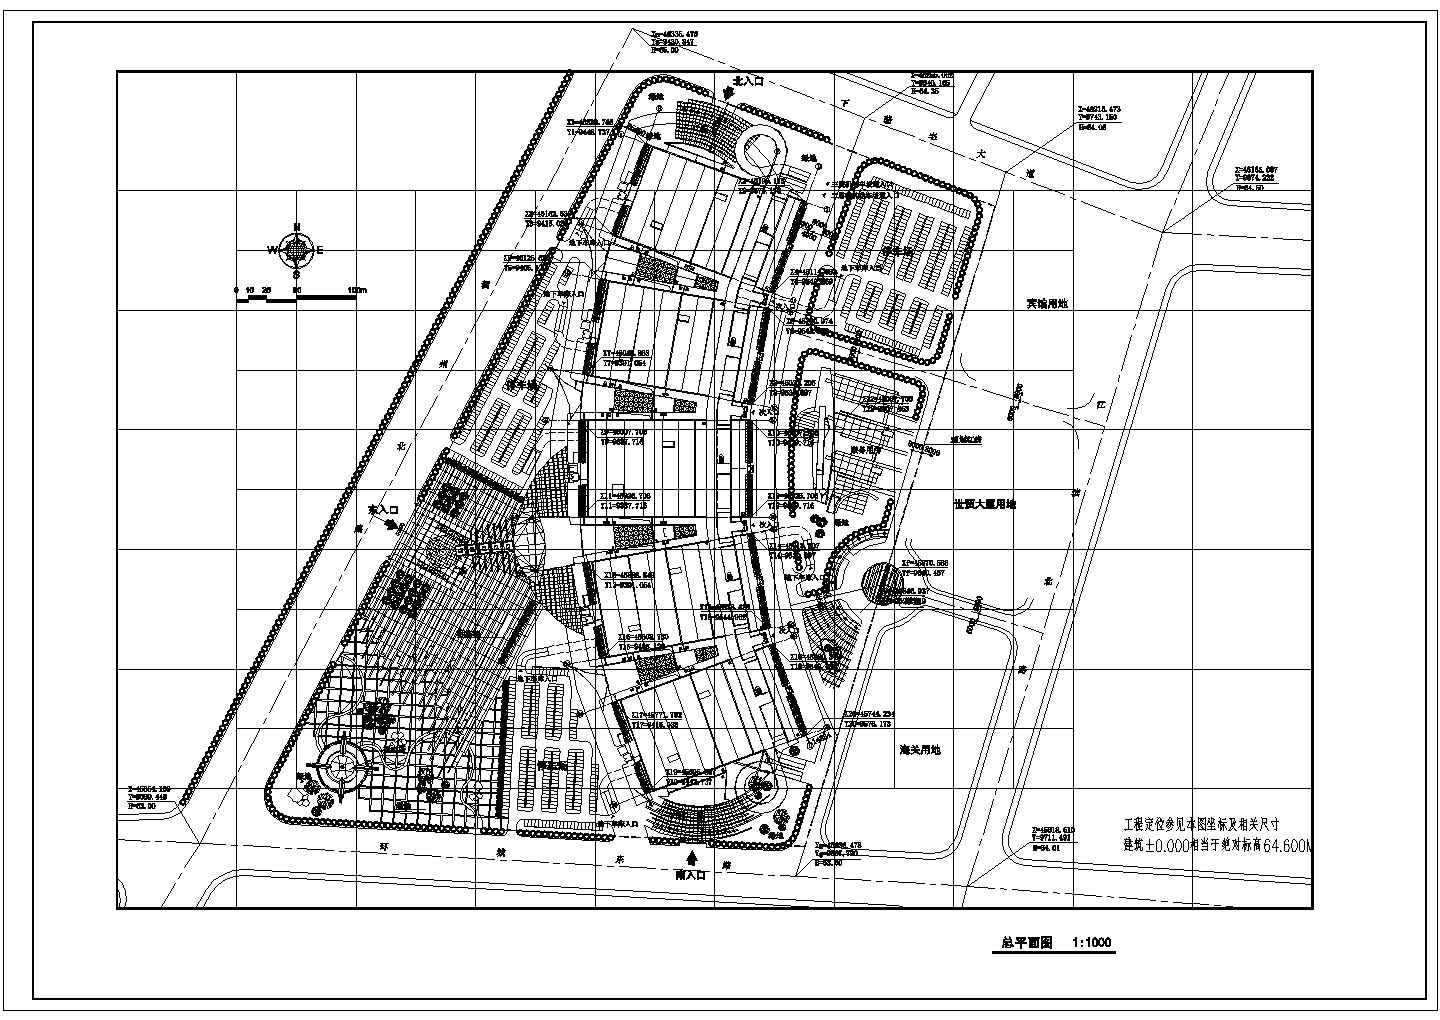 市场：4层244014.89平米弧型小商品城市场建筑方案设计图